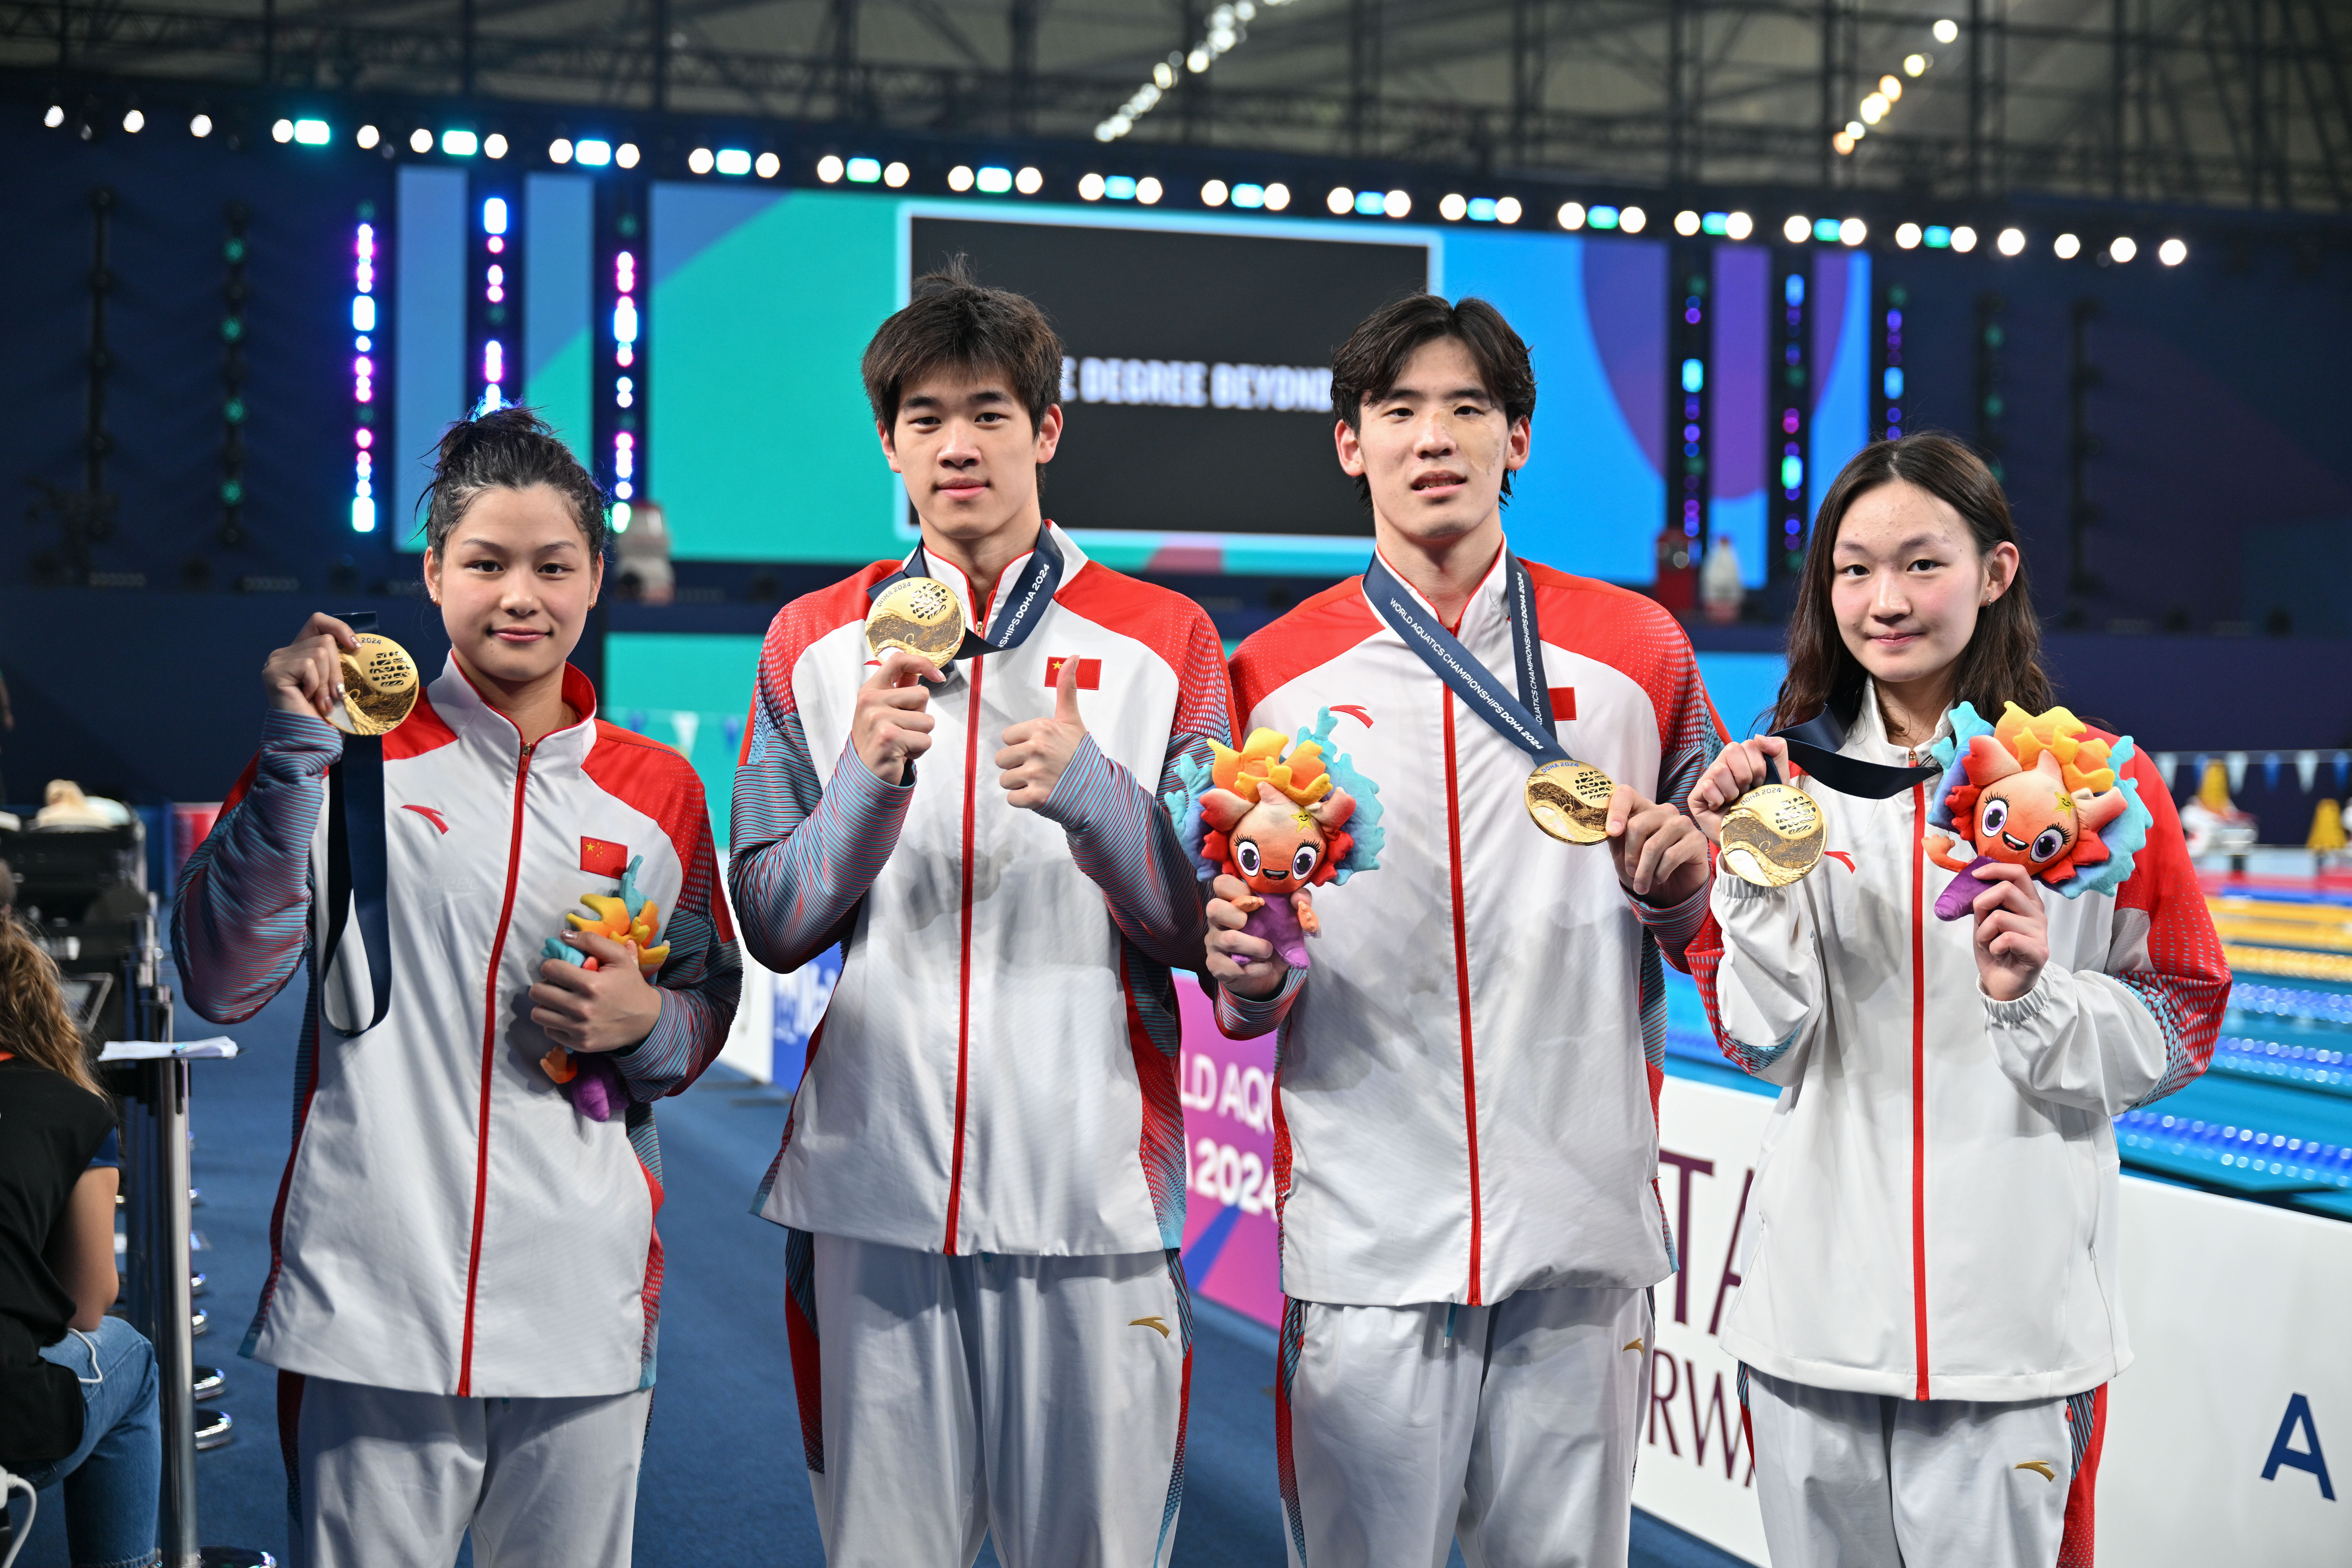 冠軍中國隊余依婷、潘展樂、王浩宇、李冰潔（從左至右）在頒獎儀式後合影。.JPG